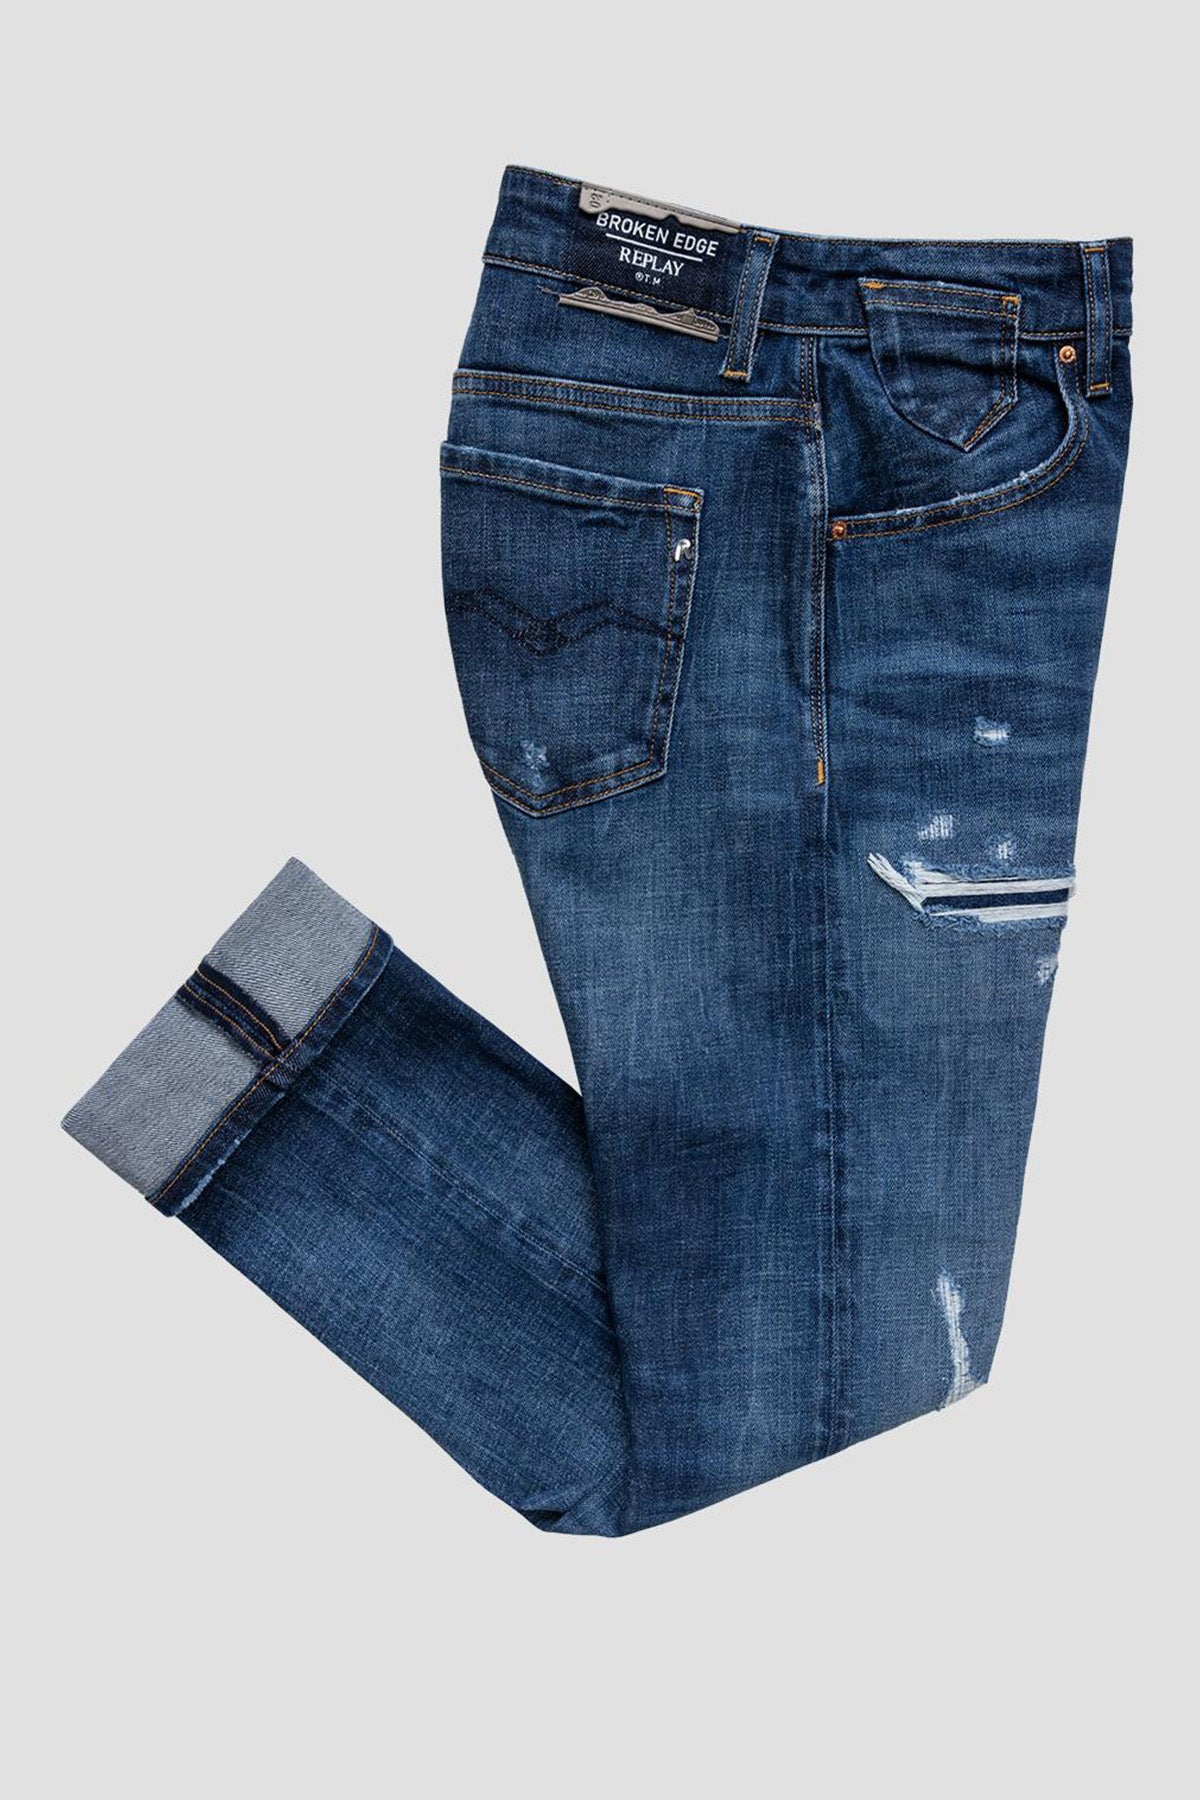 Replay Marty Yırtık Detaylı Streç Slim Boyfriend Fit Jeans-Libas Trendy Fashion Store